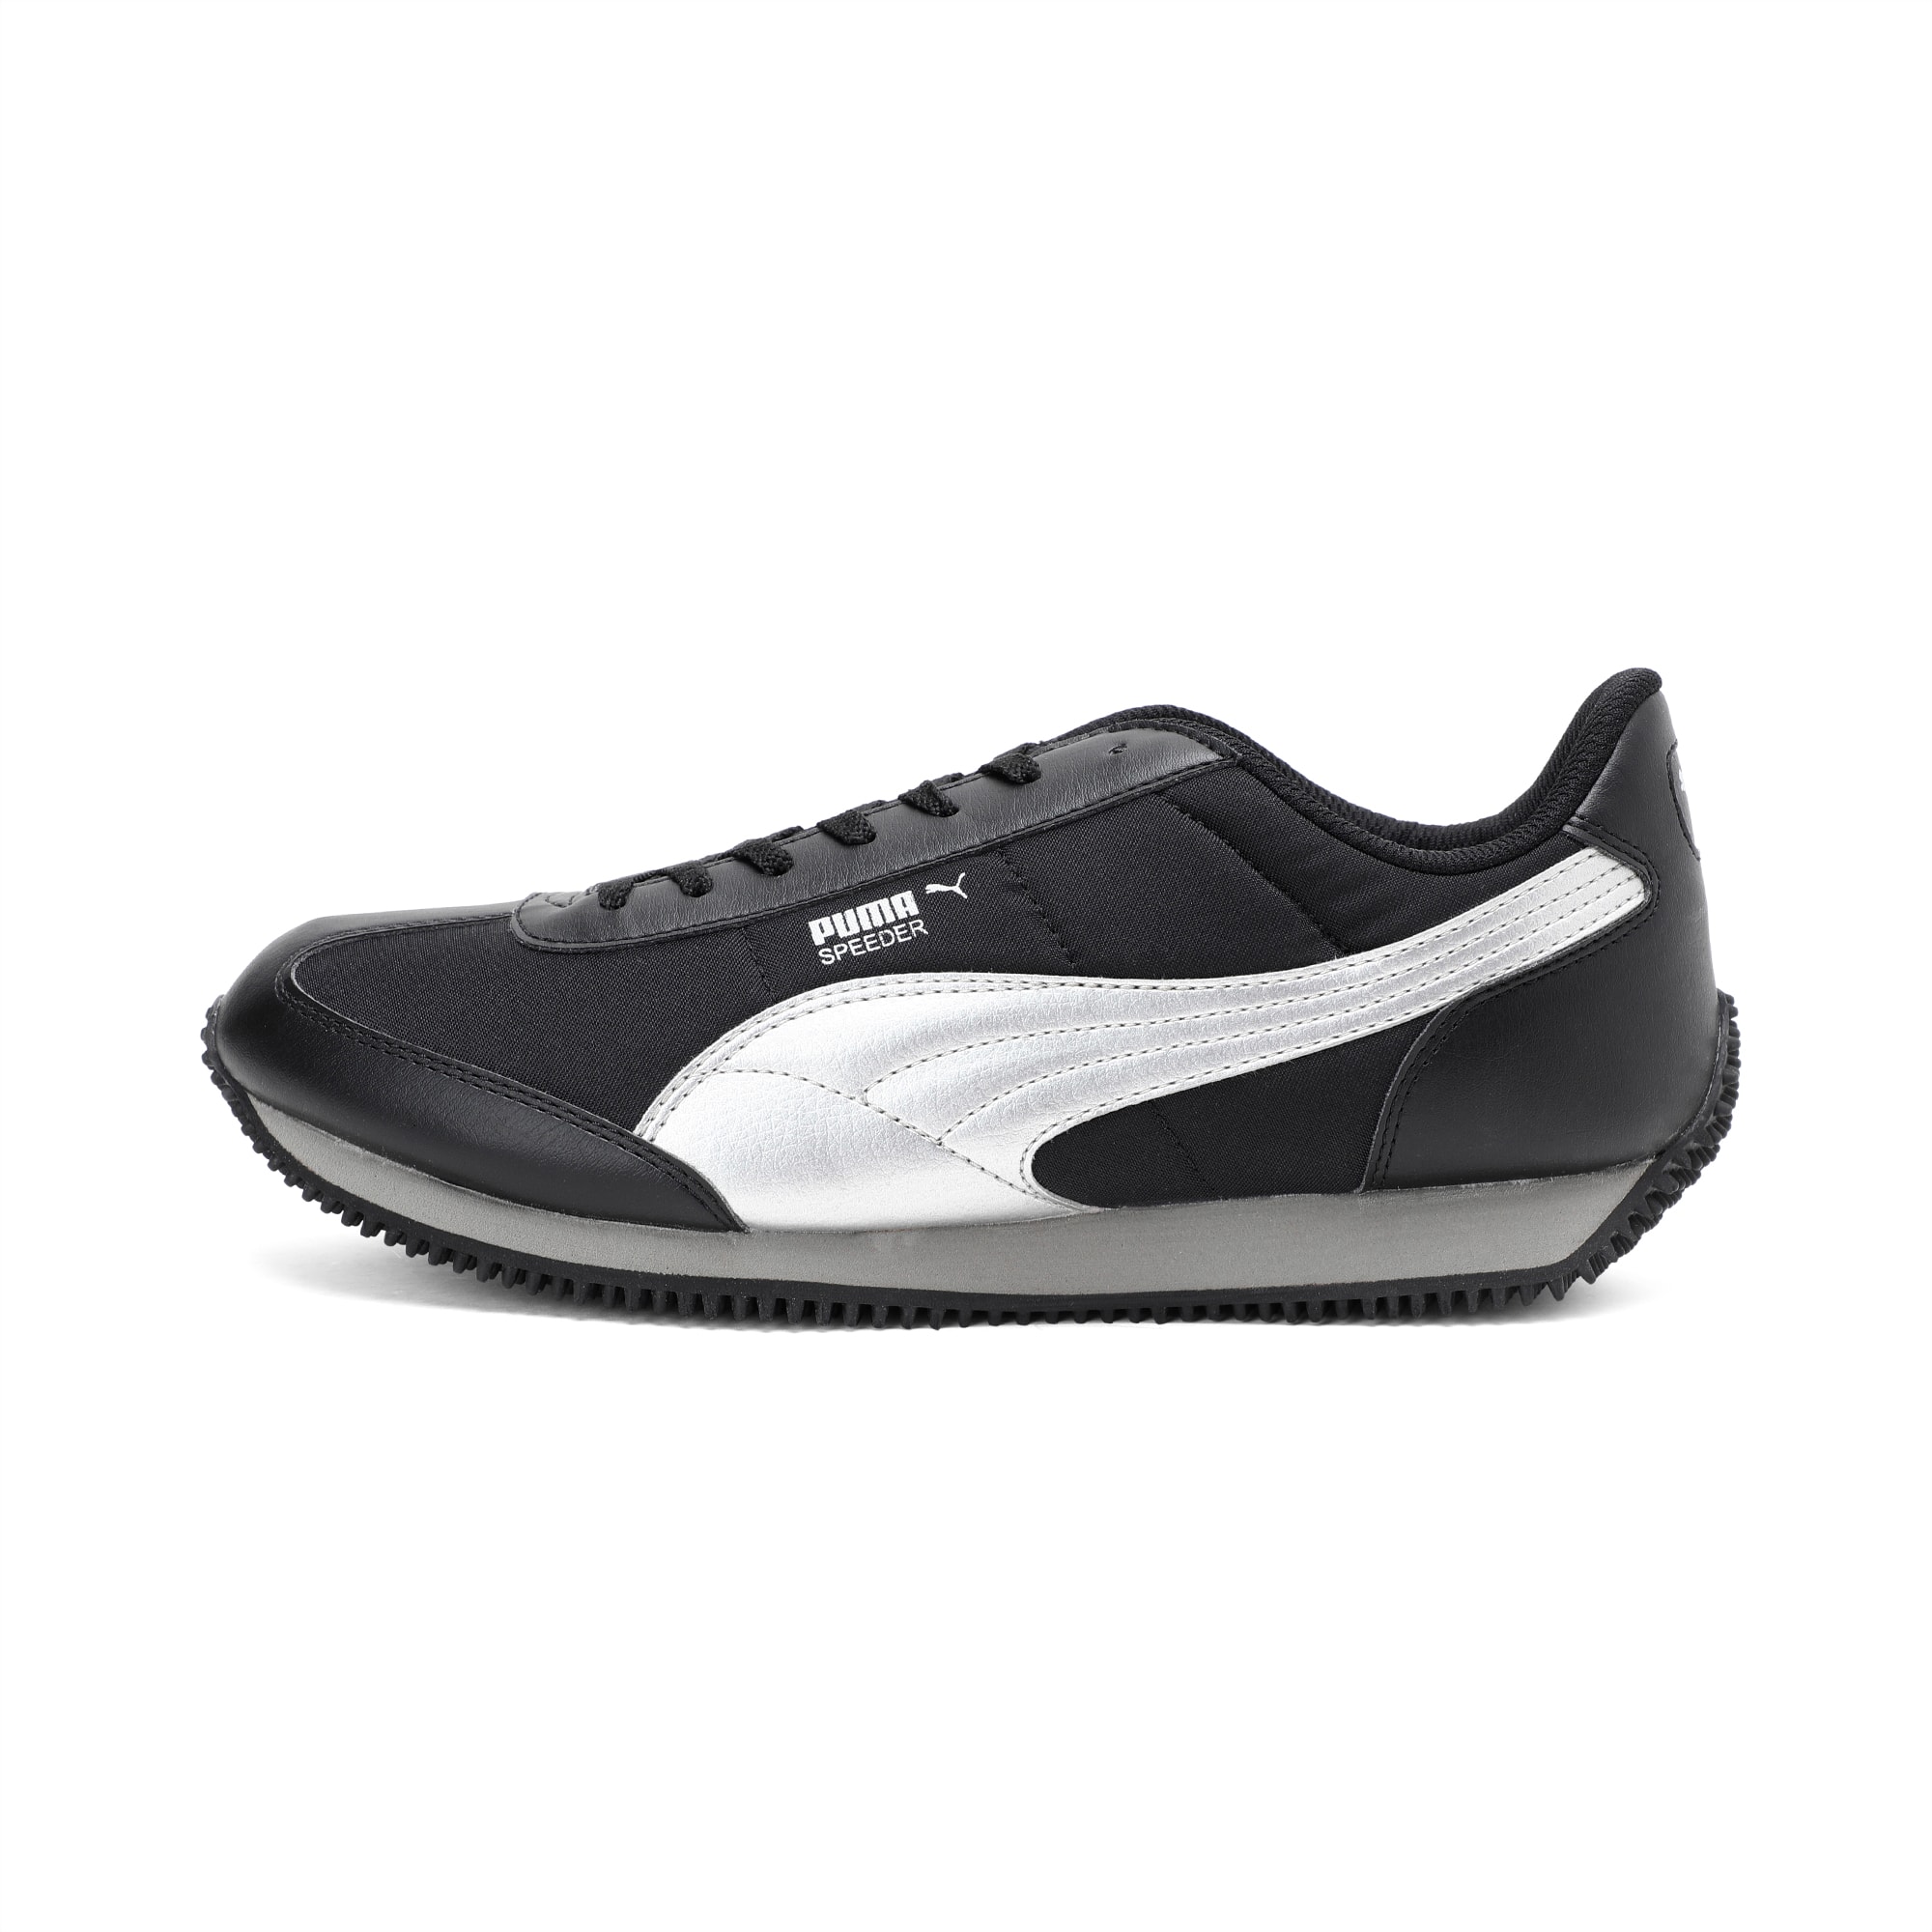 Etapa Aire acondicionado dígito Speeder Tetron II Ind. | black-puma silver | PUMA Men's Sports Shoes | PUMA